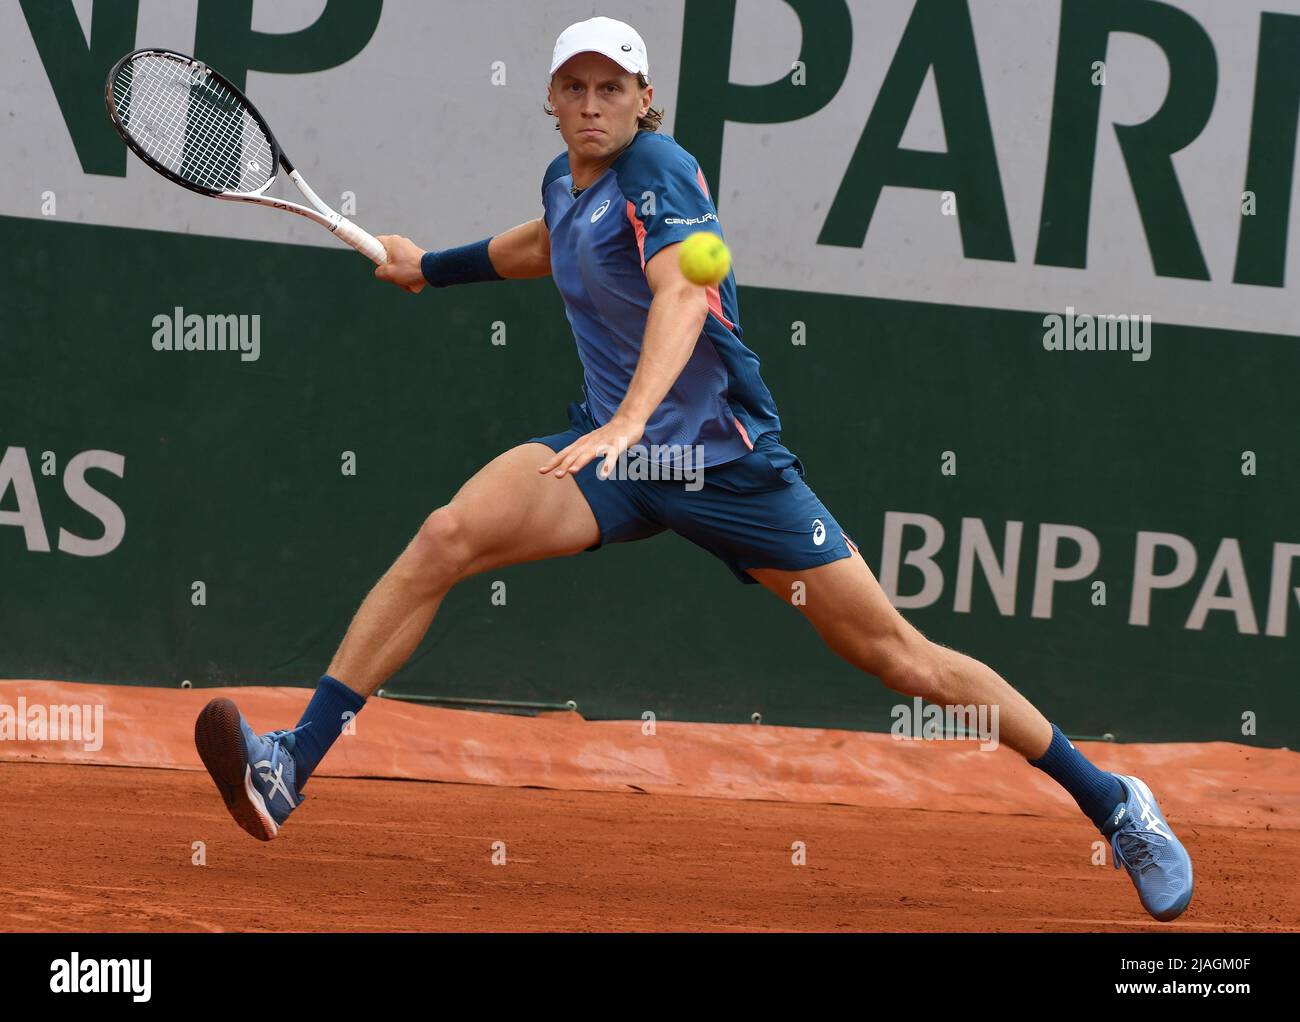 French Tennis Championship "Roland Garros" 2022. Second round. Finnish  tennis player Emil Ruusuvuori during a match